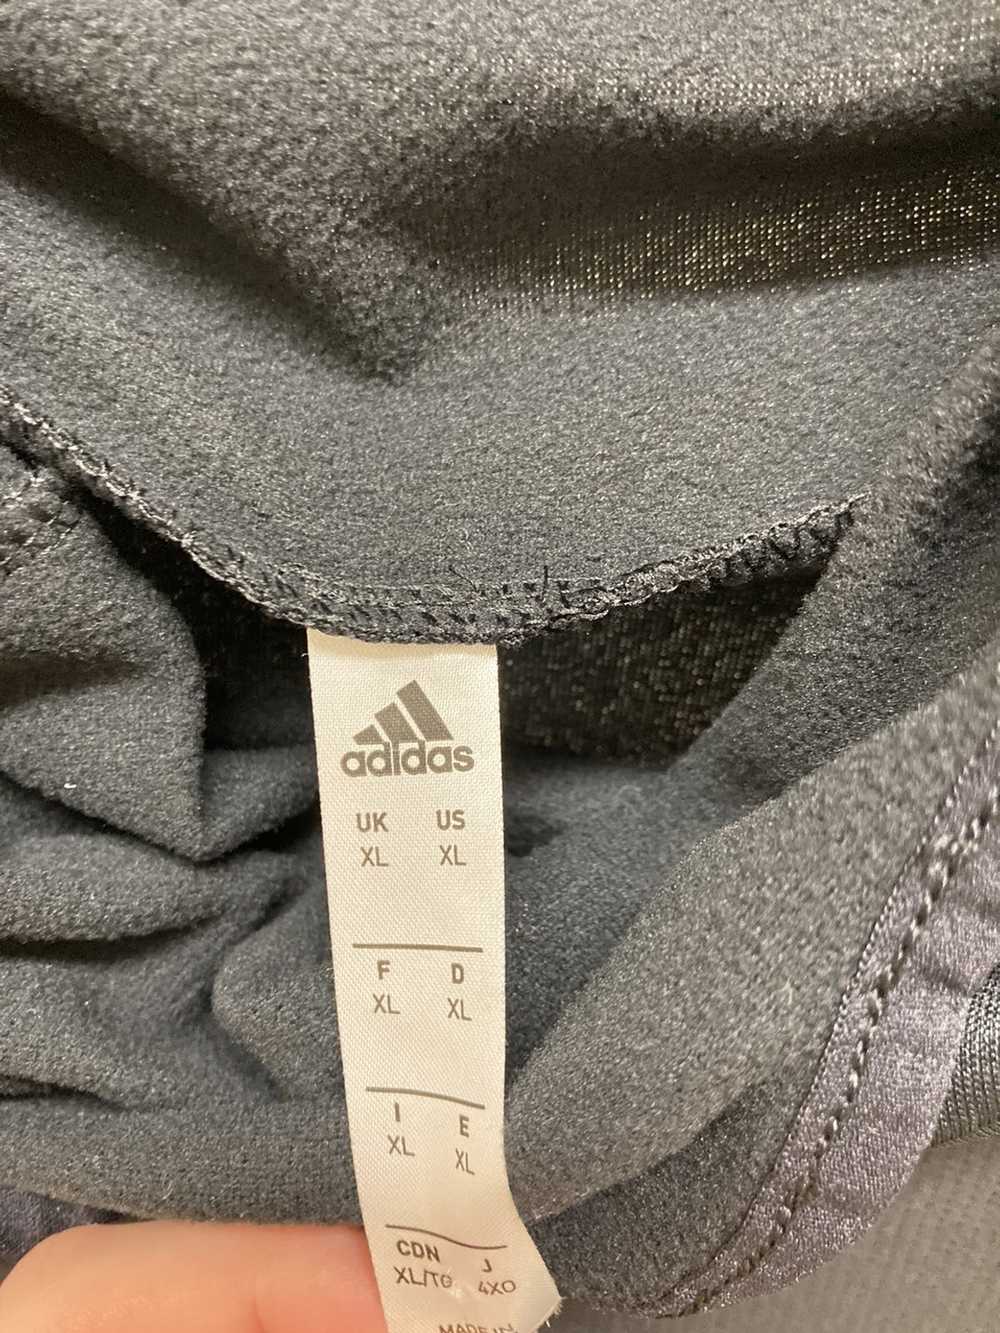 Adidas Adidas Anorak - image 2